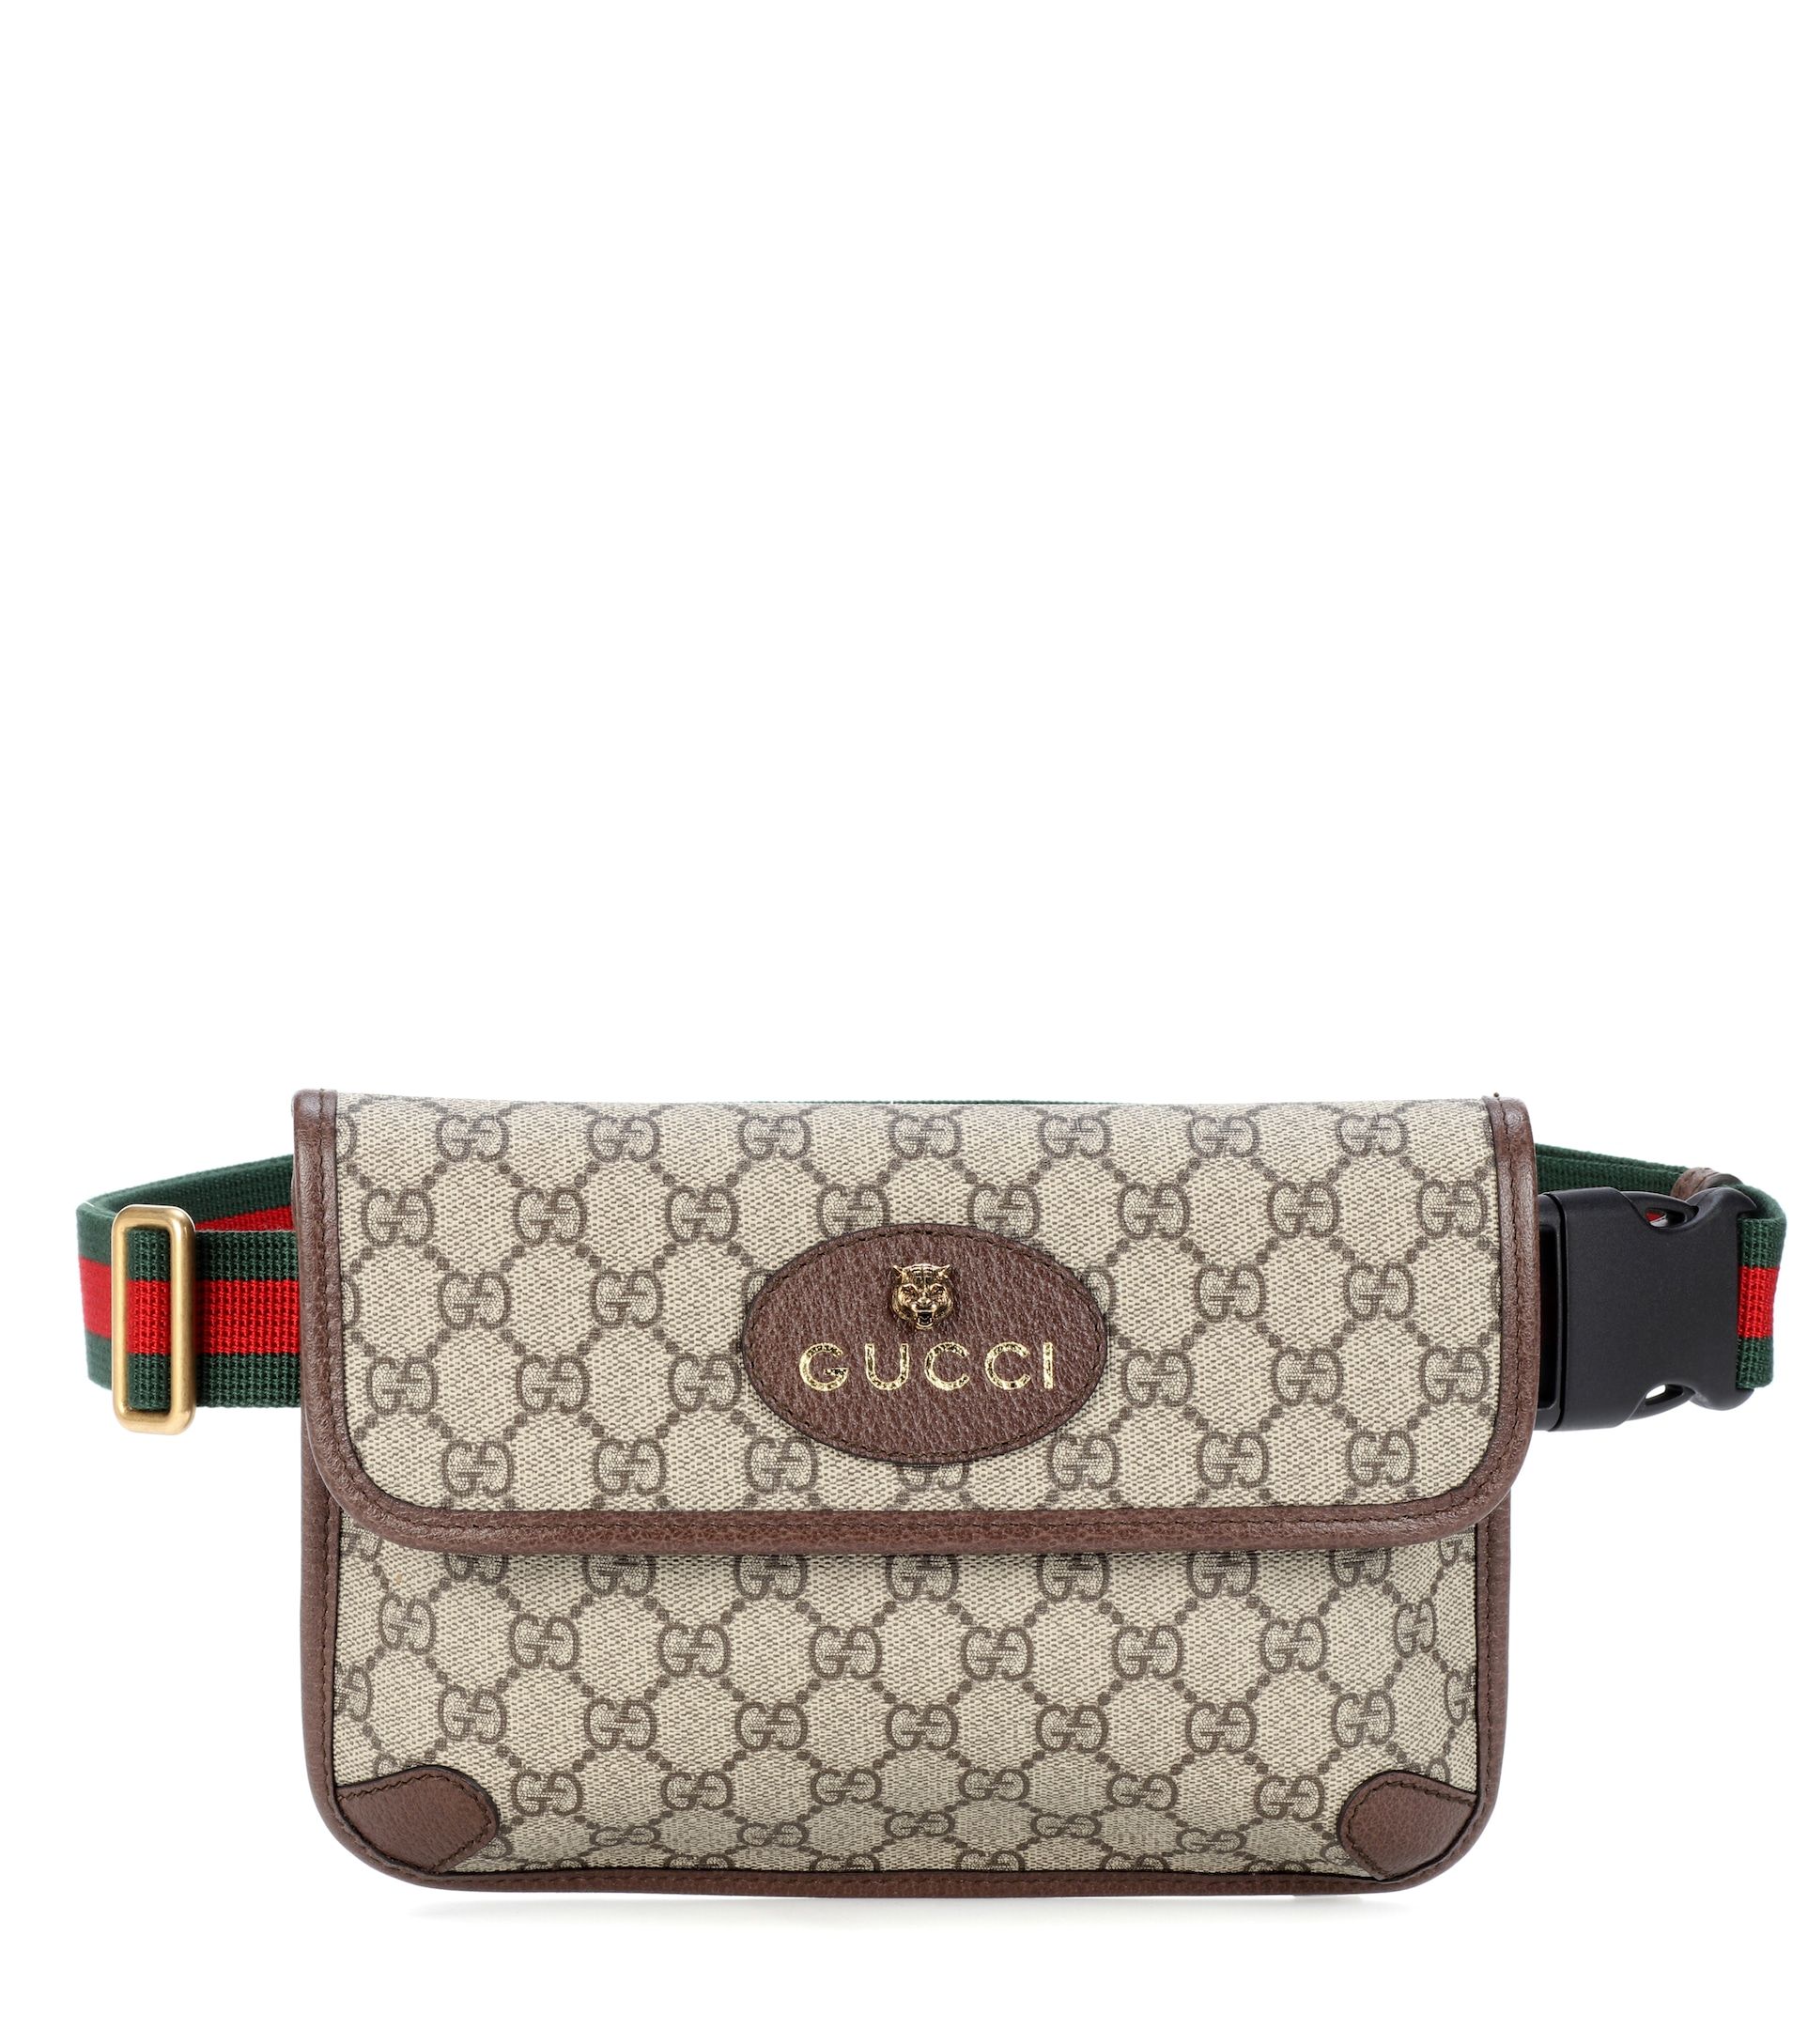 gucci purse around waist